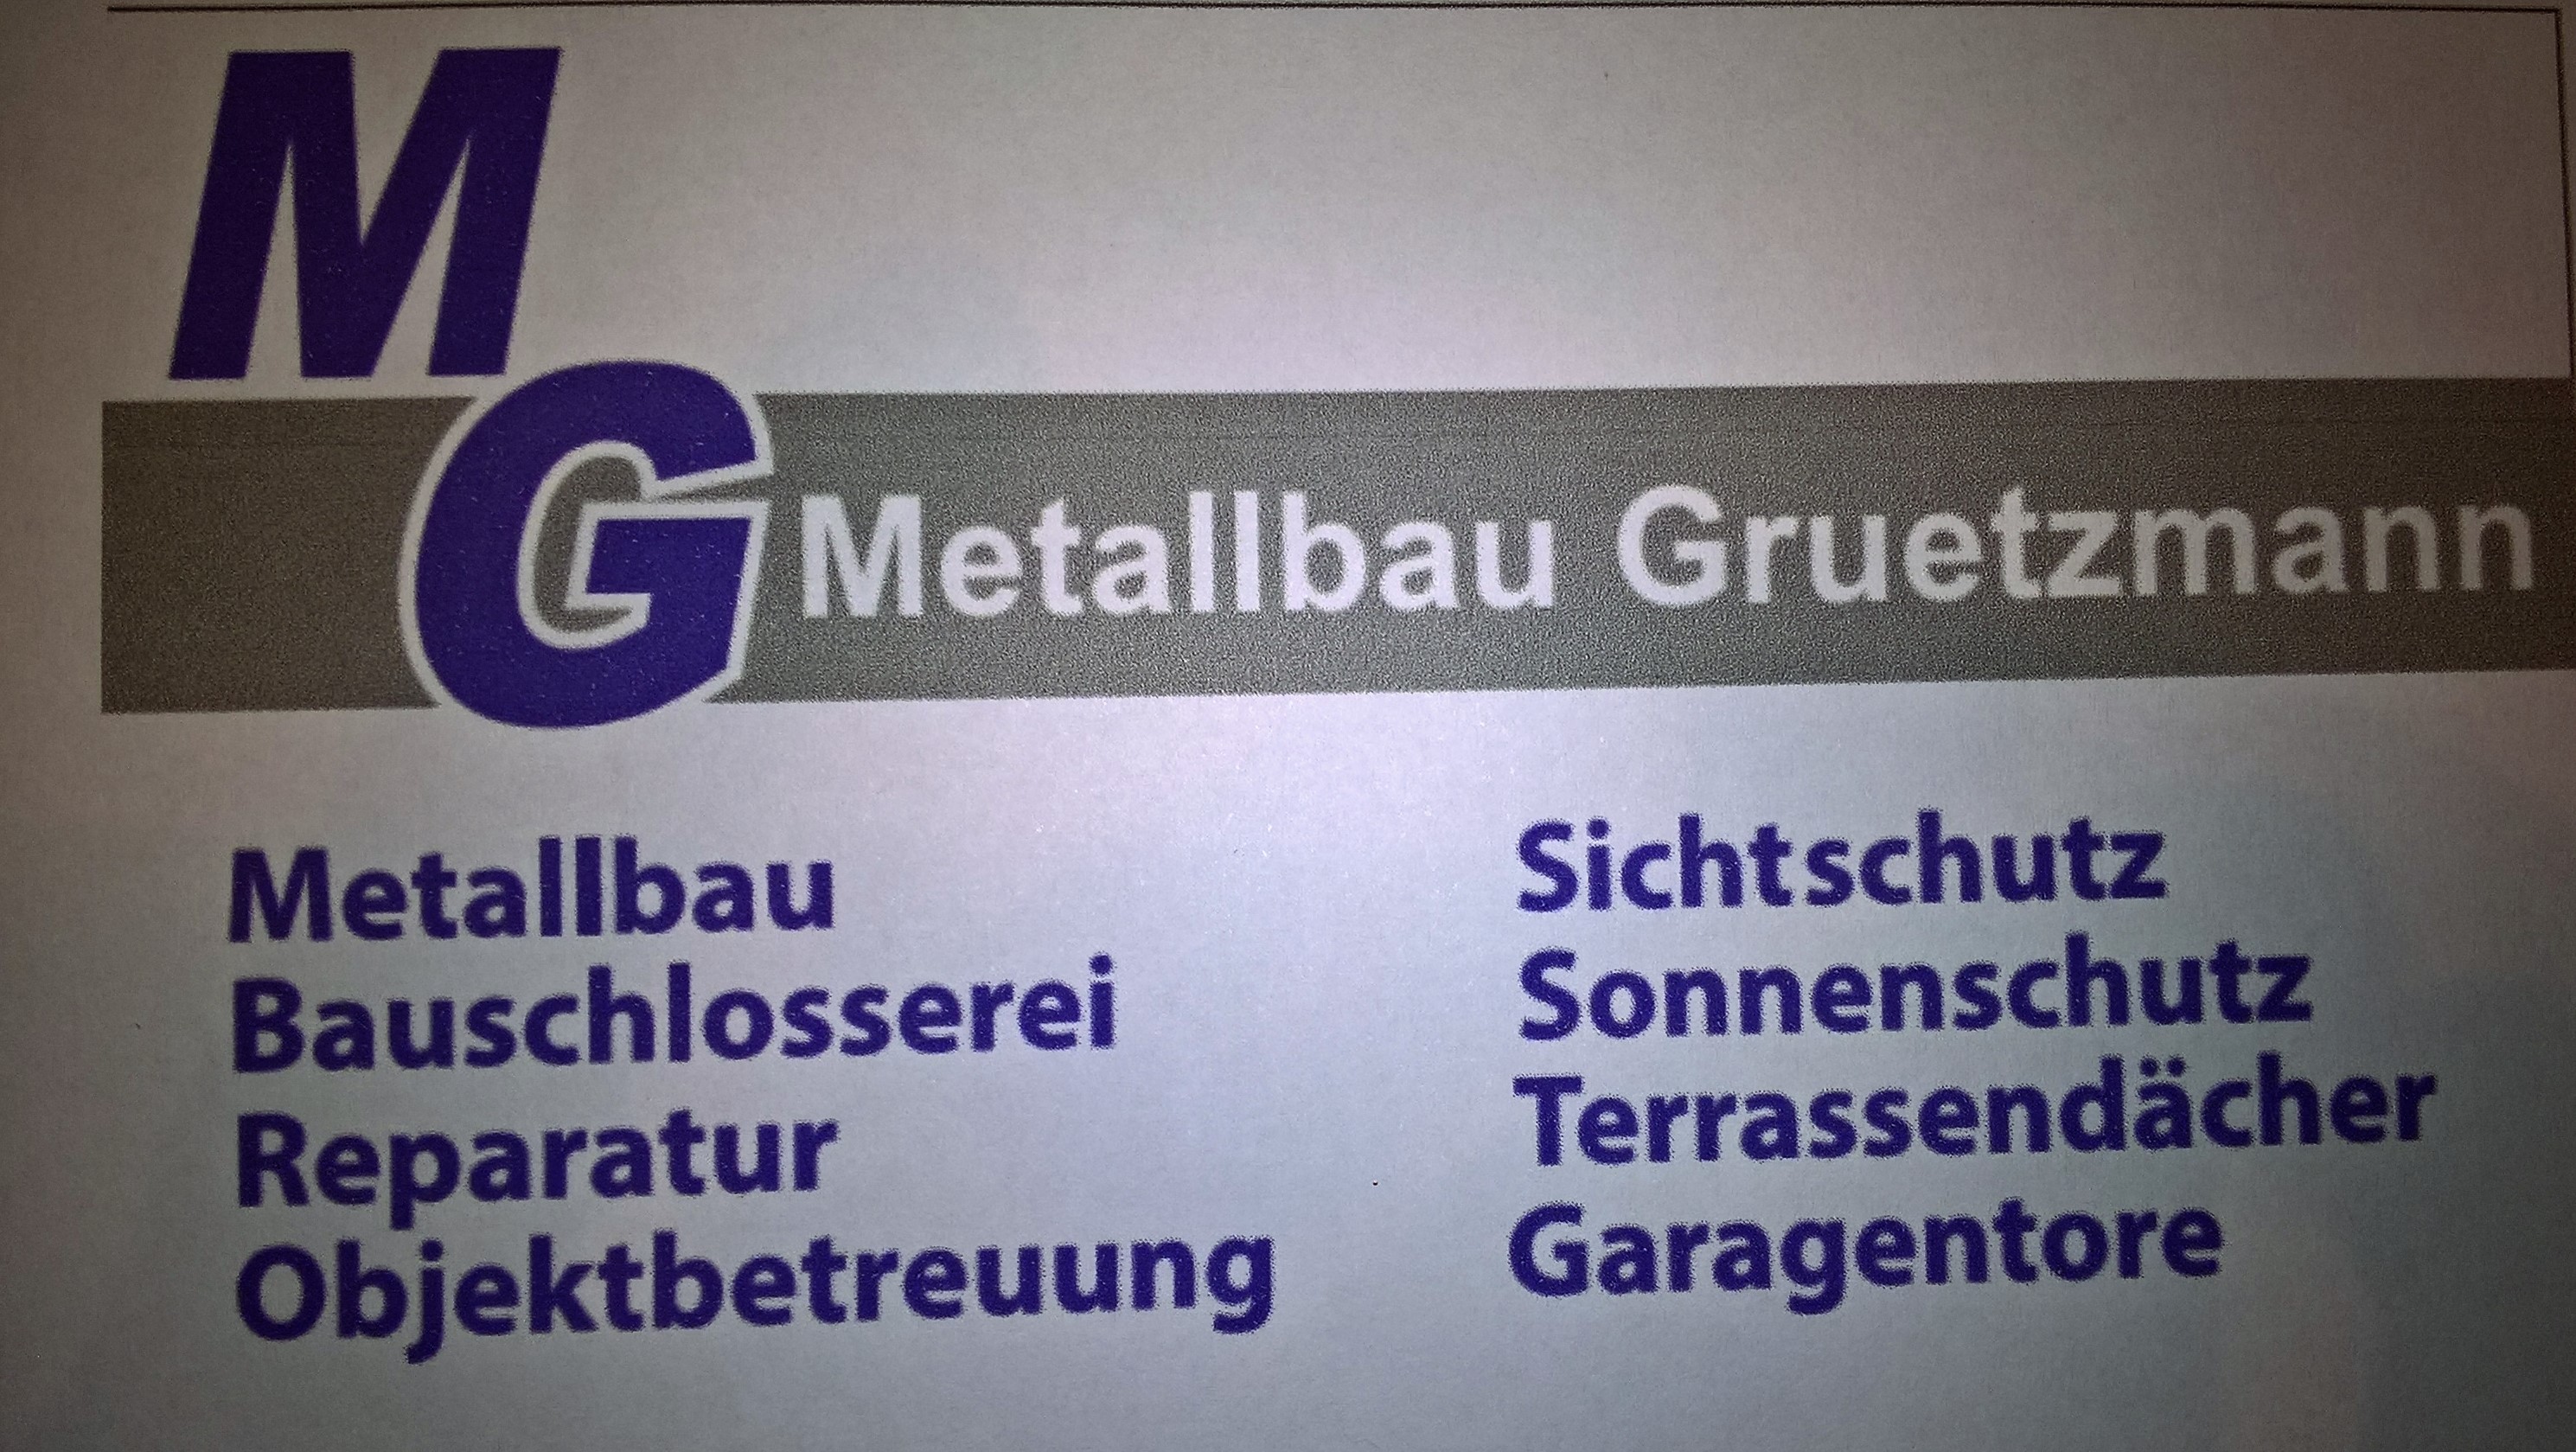 www.metallbau-gruetzmann.de